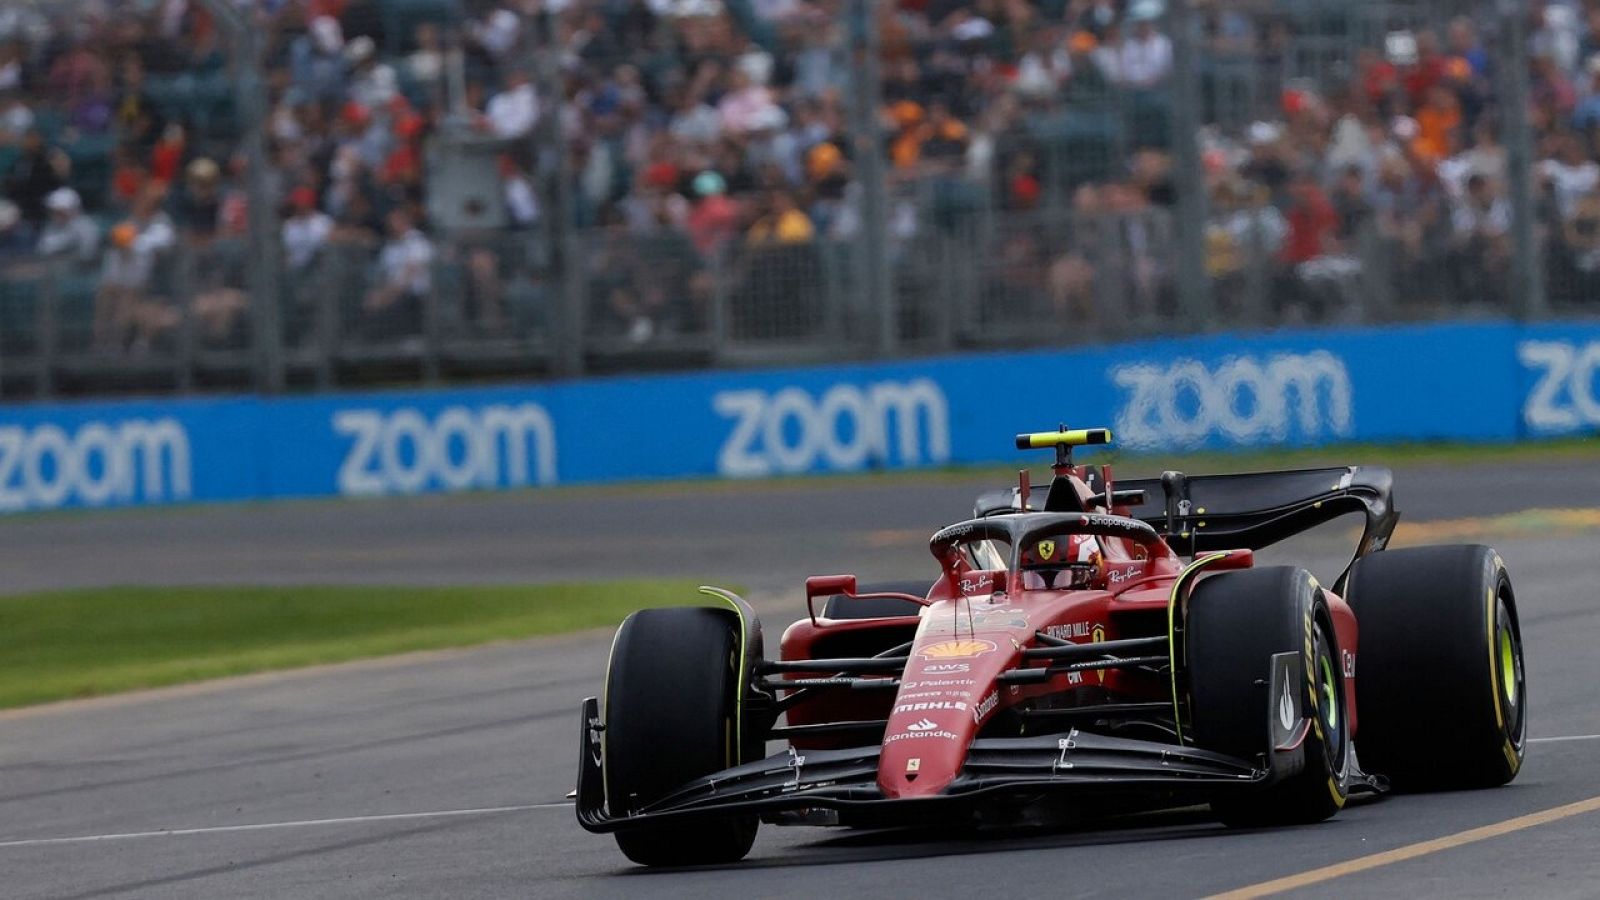 La F1 vuelve a Australia con Leclerc líder para Ferrari